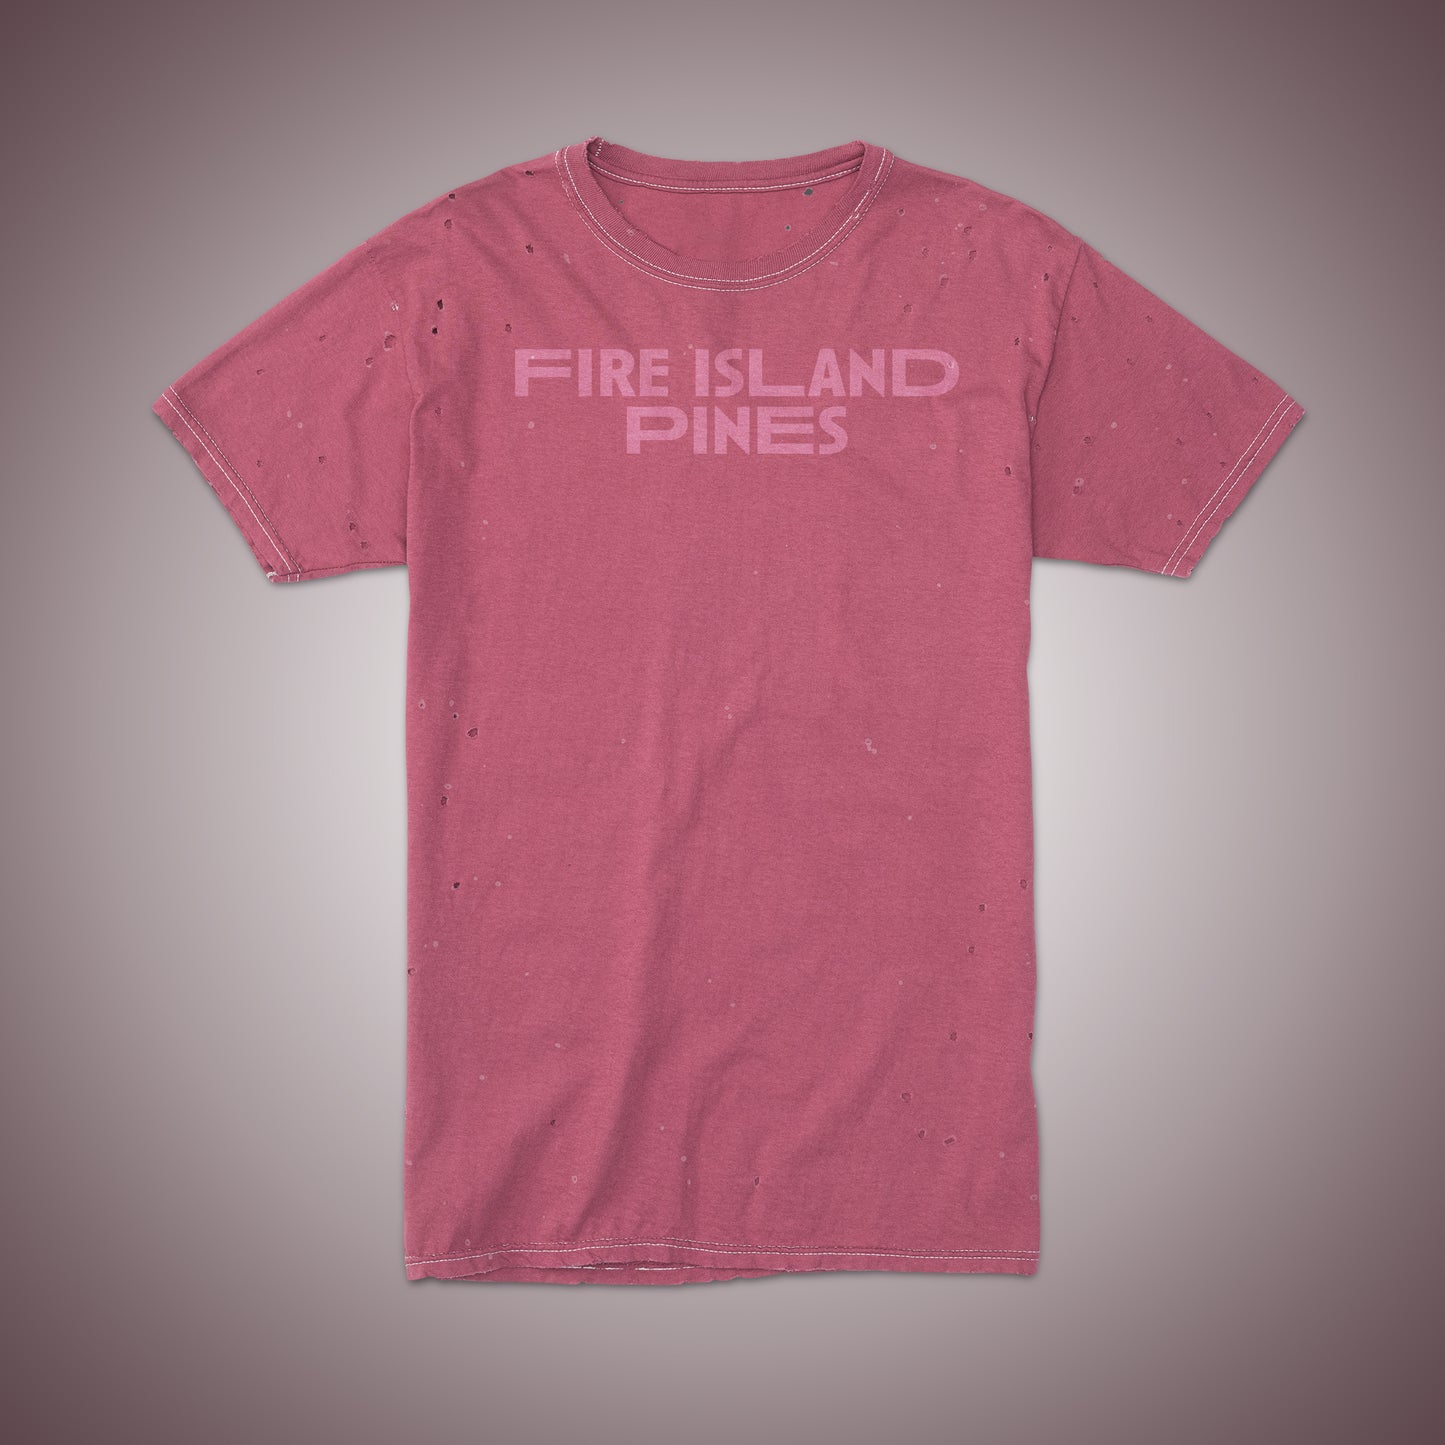 Future Vintage Tee: "Fire Island Pines"